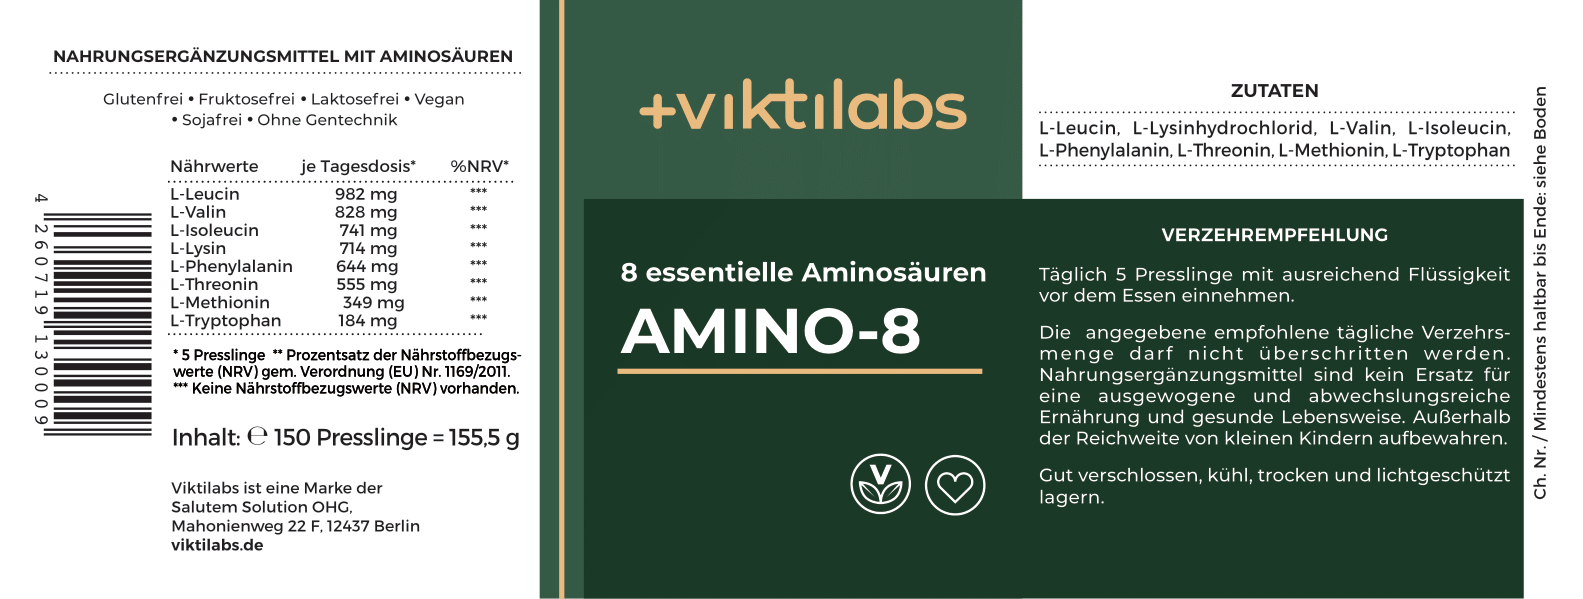 Bestellkampagne für Amino-8 nach dem Vorbild von Prof. Dr. Lucà-Moretti (150 Presslinge)- bis zu 38 % sparen und ab 14,73 € pro Glas